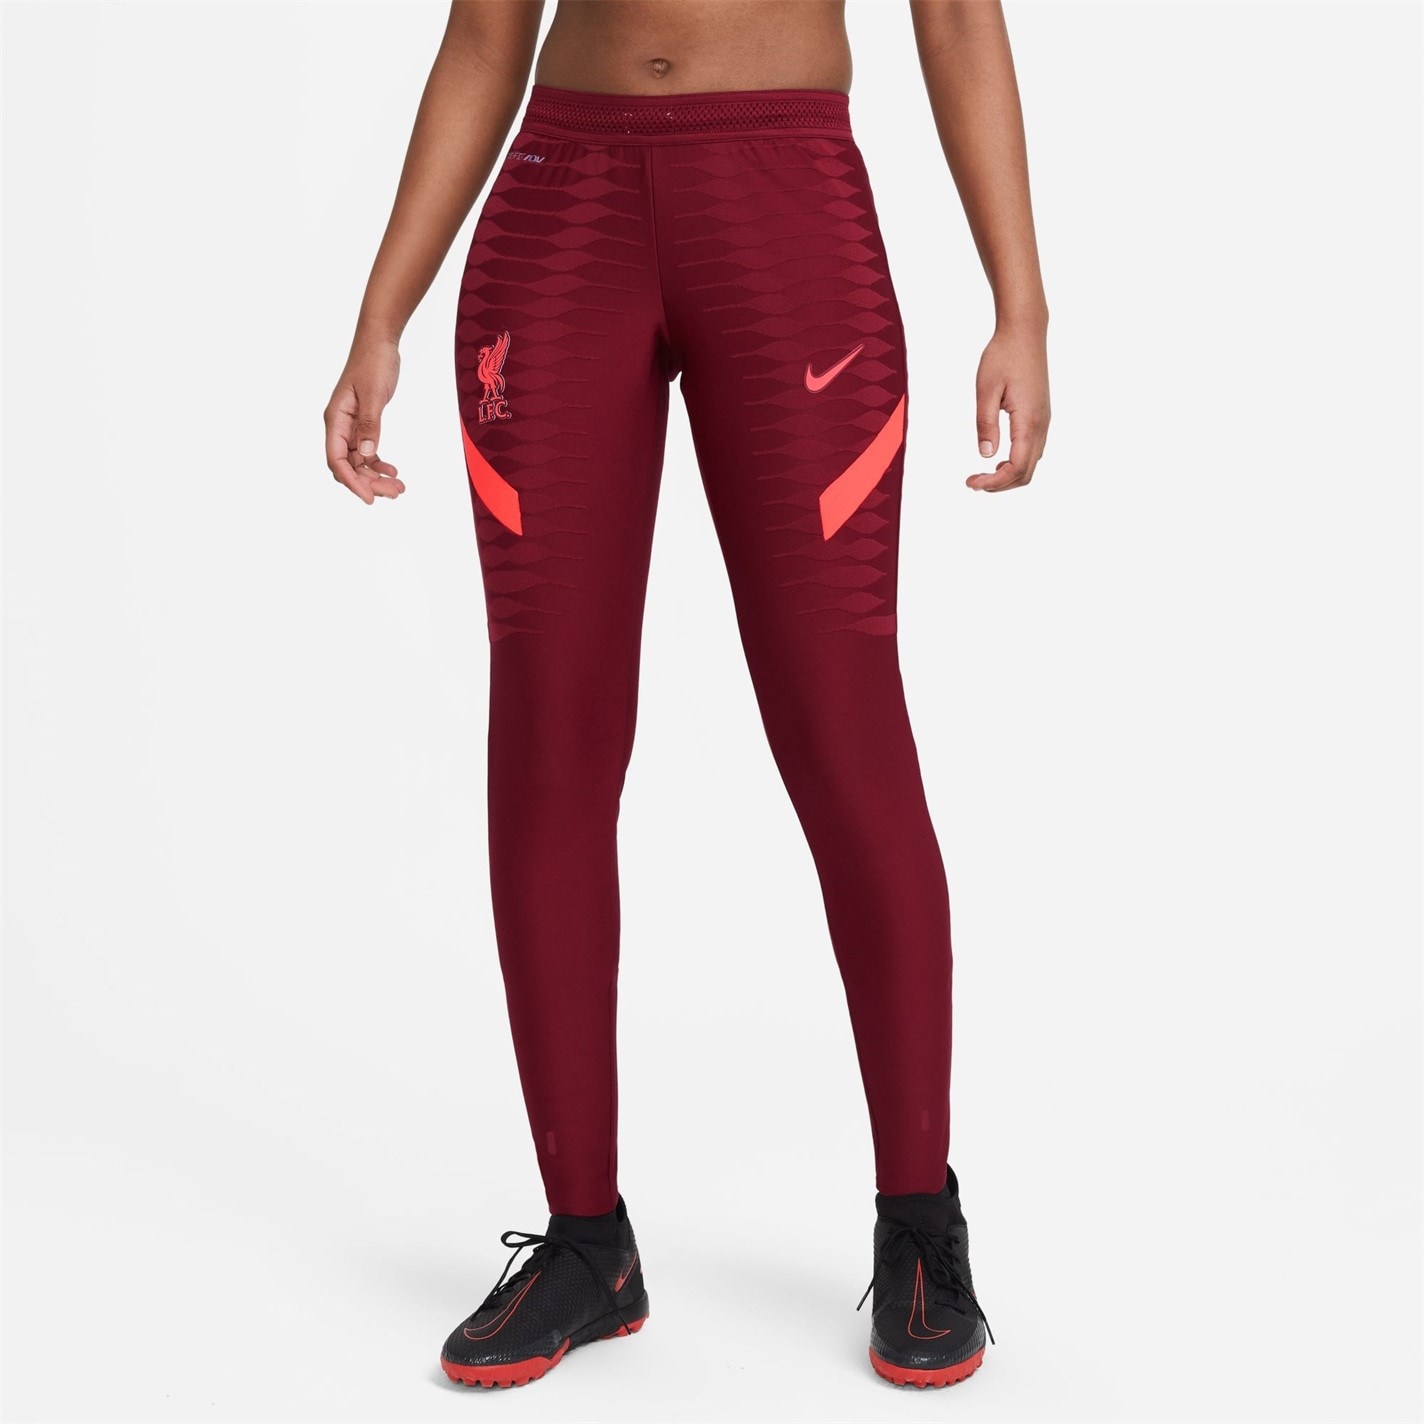 Pantaloni jogging Nike Liverpool FC Elite pentru femei rosu inchis